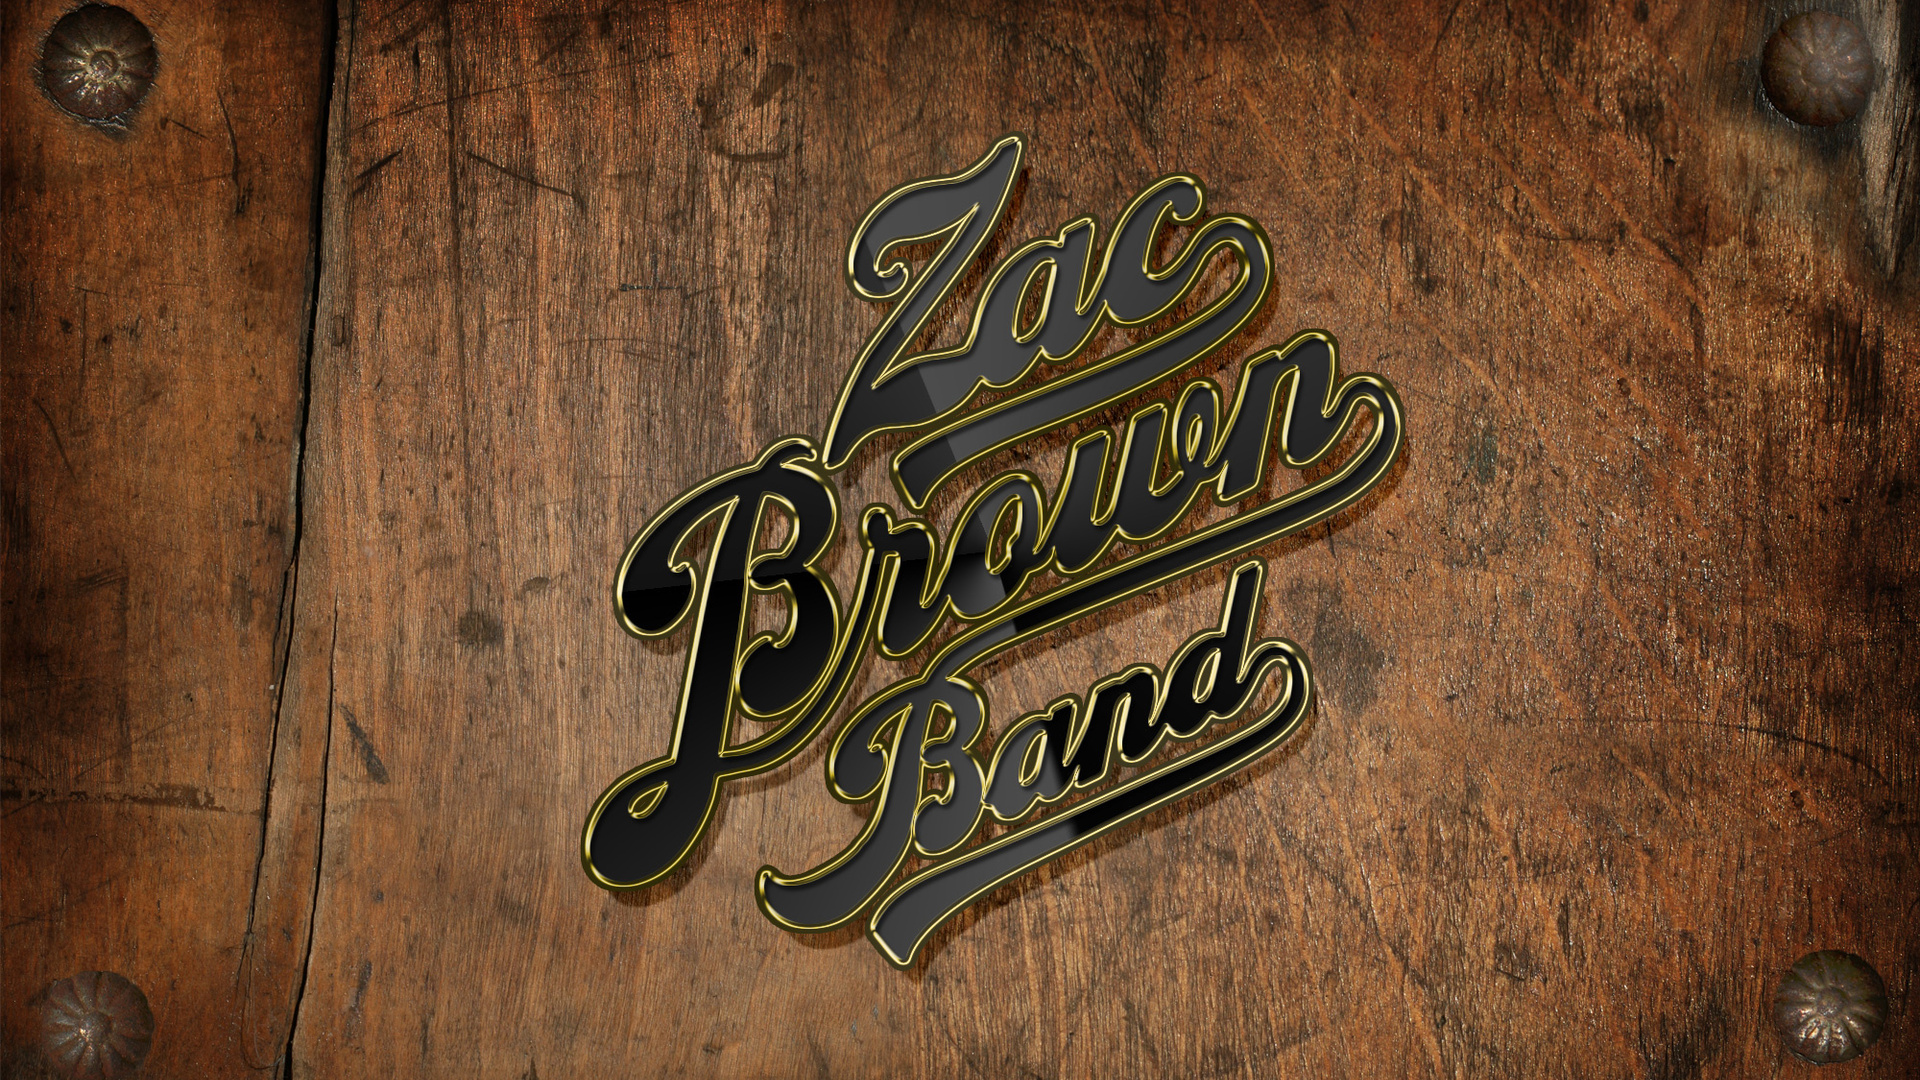 Zac brown band Logos